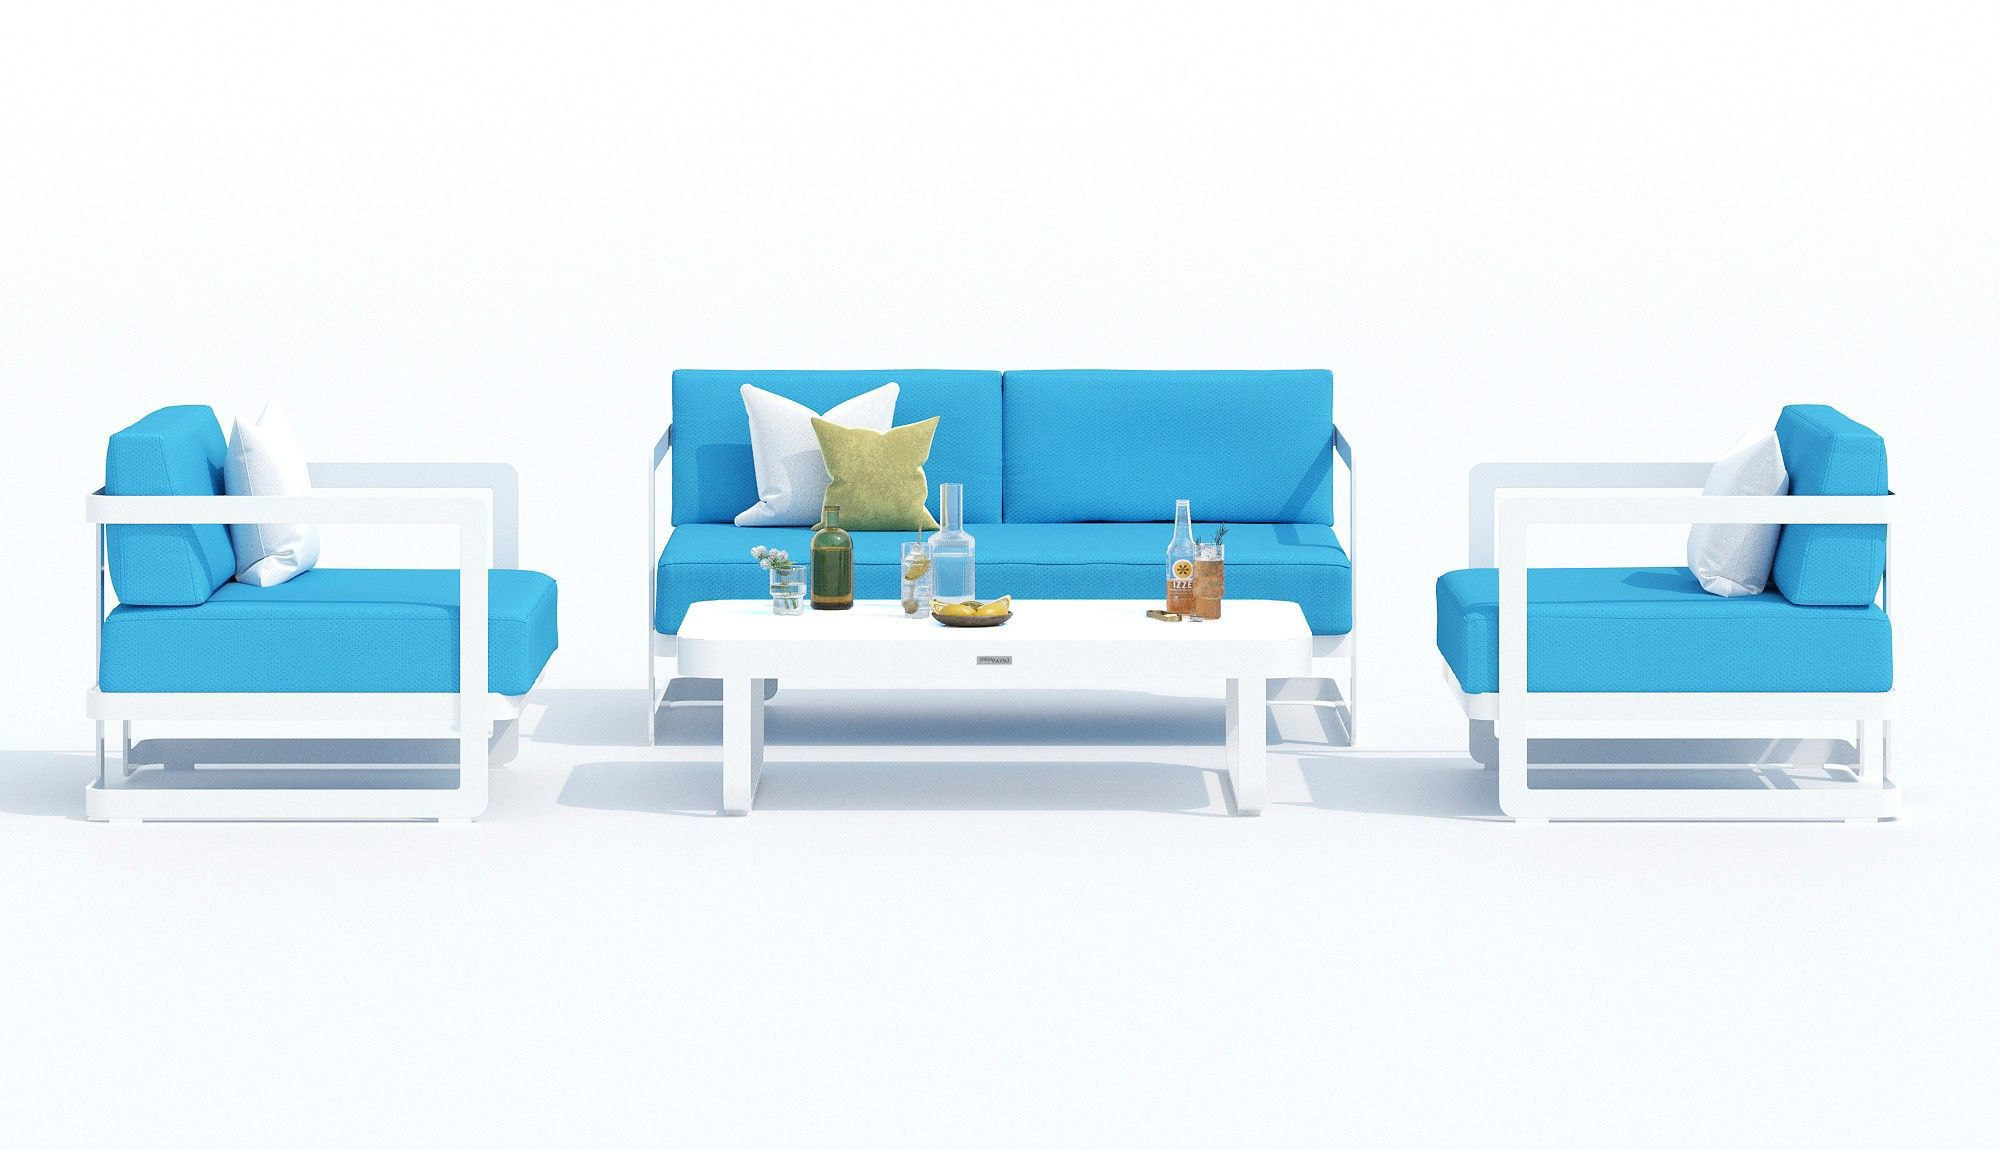 91038562 Садовая мебель для отдыха алюминий серый : стол, диван, 2 кресла Silena blue STLM-0452621 IDEAL PATIO OUTDOOR STYLE